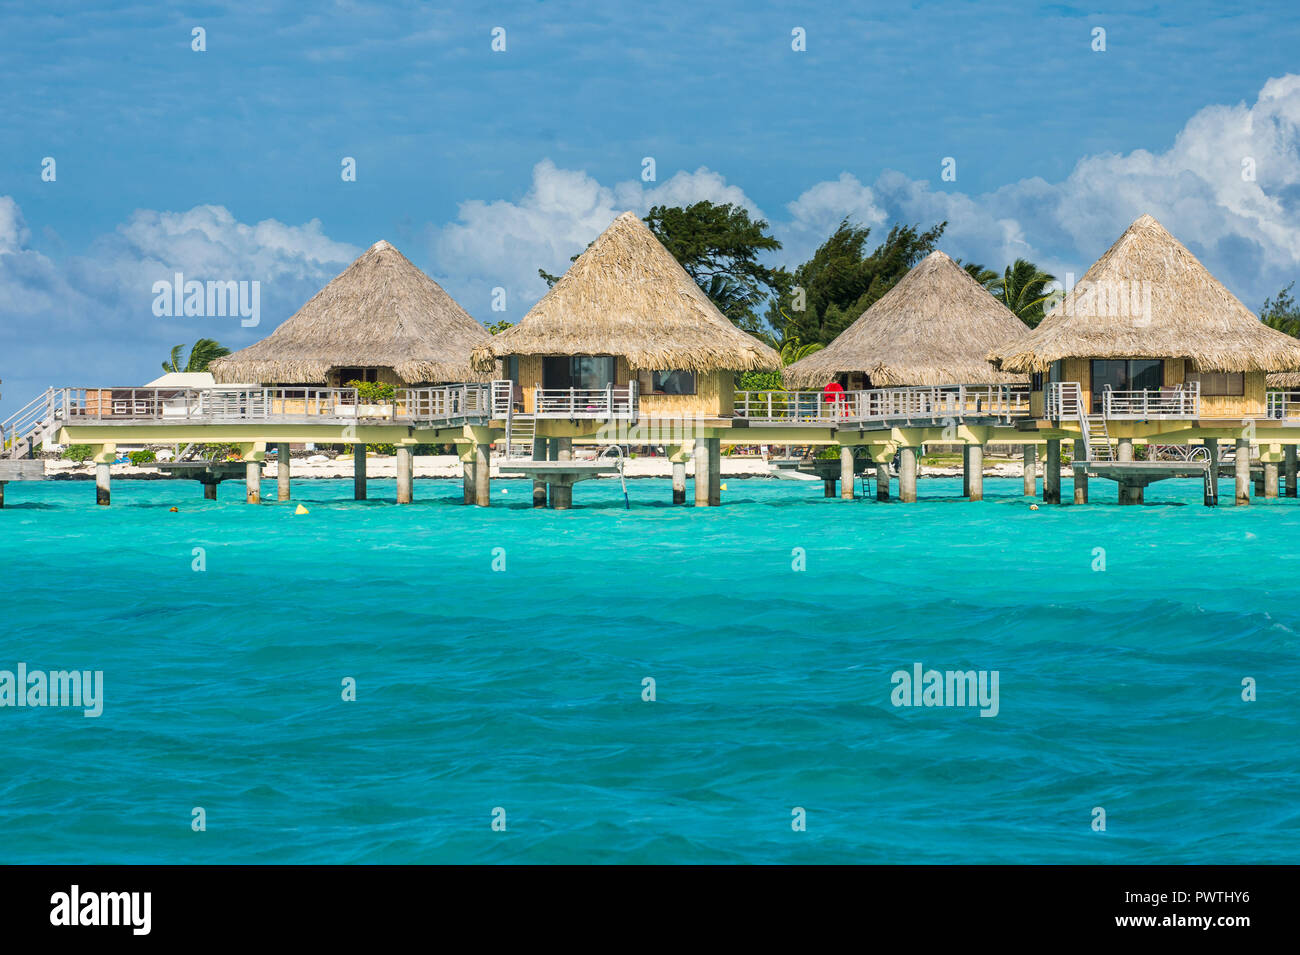 Overwater bungalows on stilts in luxury hotel, Bora Bora, Französisch-Polynesien Stock Photo